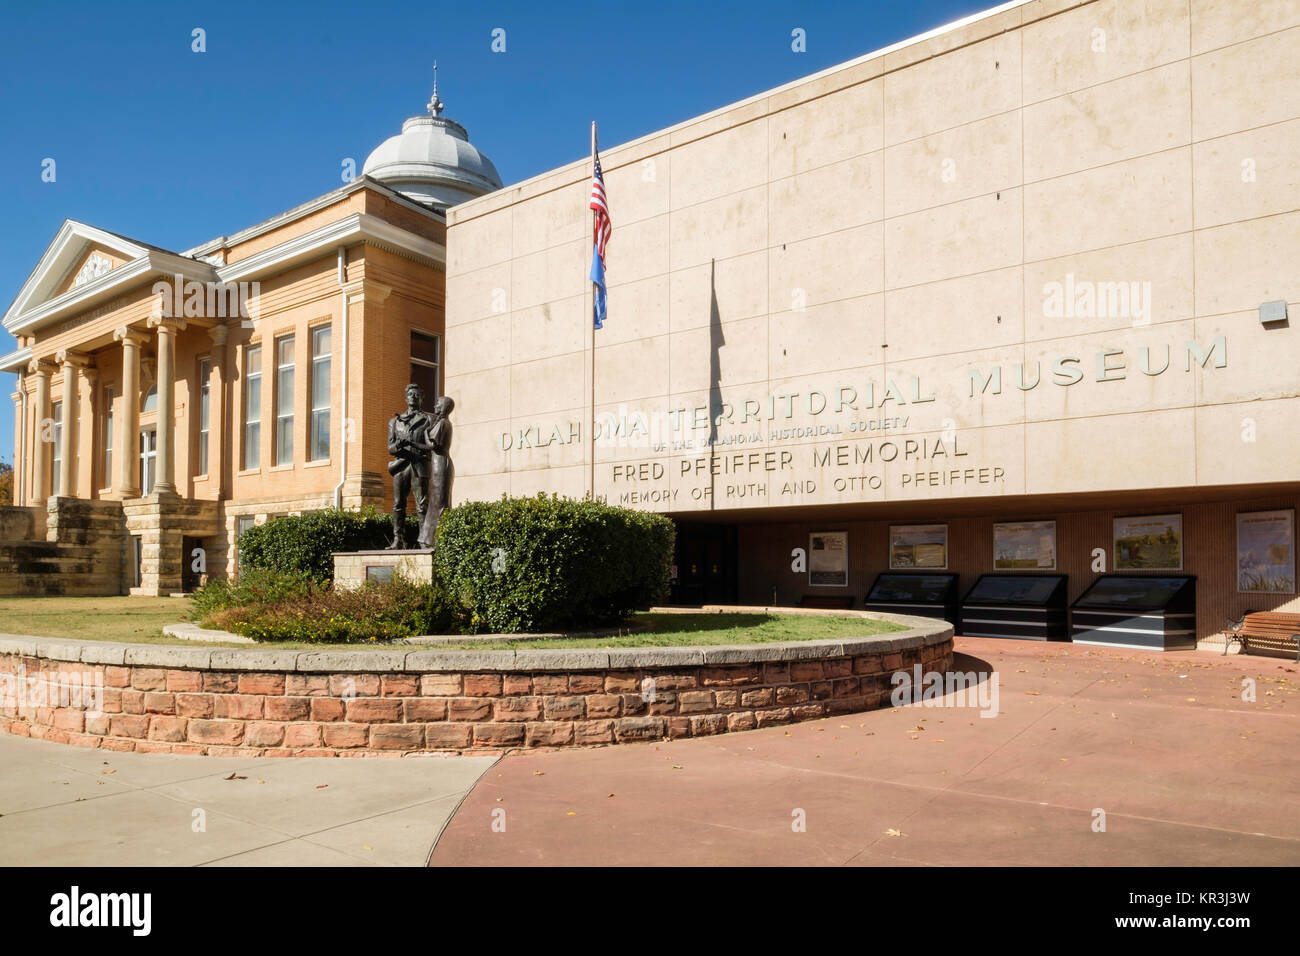 Äußere der neo-klassischen Oklahoma territorialen Museum und die Statue eines Oklahoma Cowboy und einer Indianerin. Guthrie, Oklahoma, USA. Stockfoto